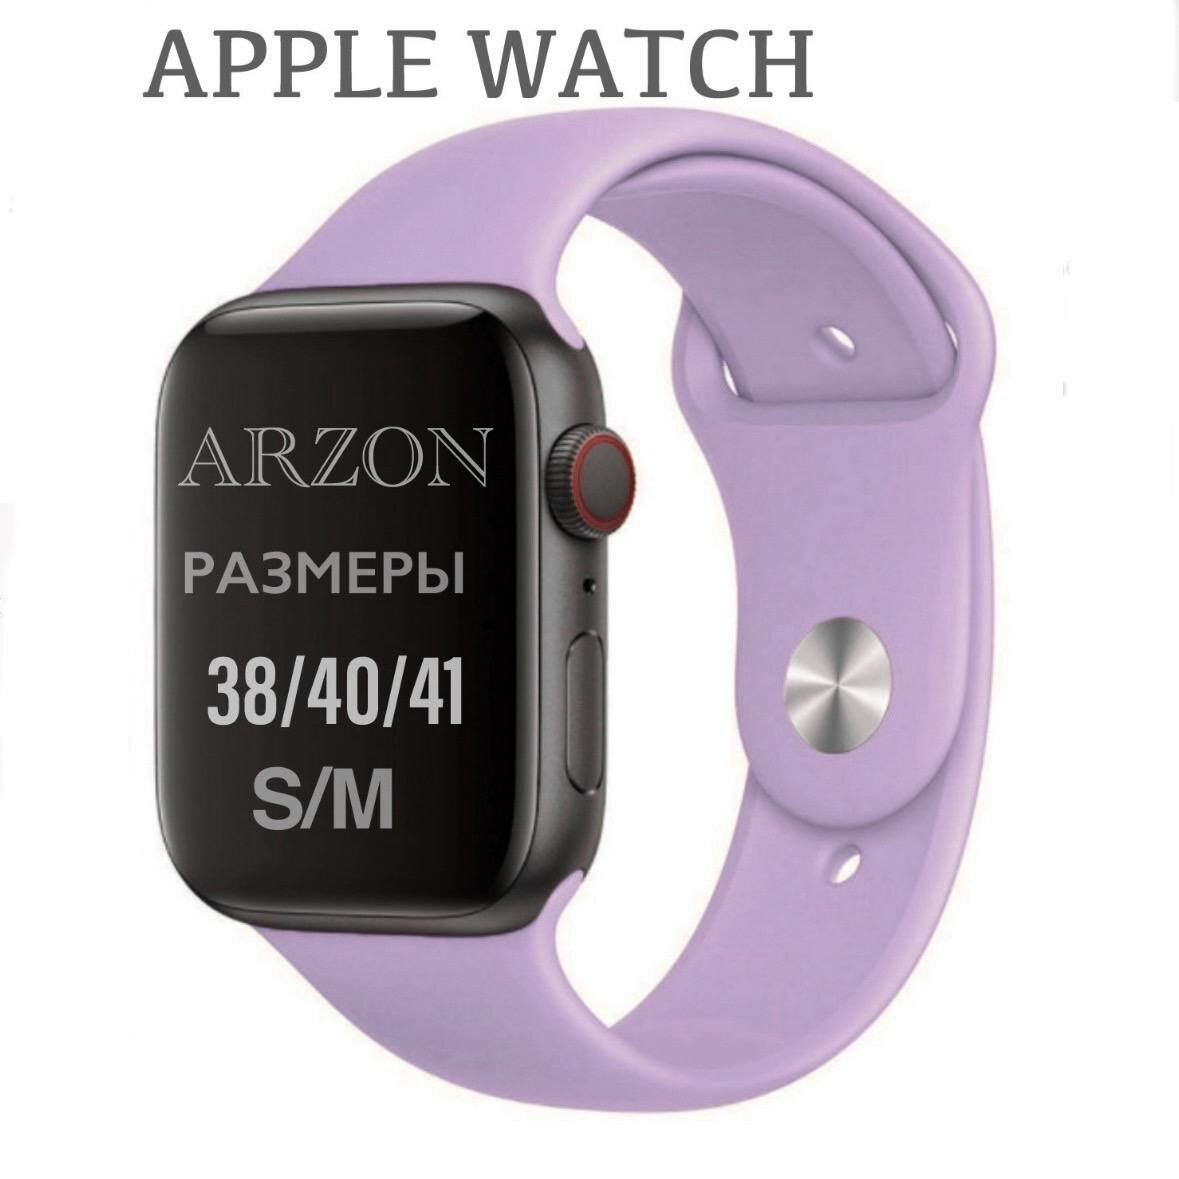 "Ремешок Apple Watch" - стильный и надежный ремешок для ваших часов